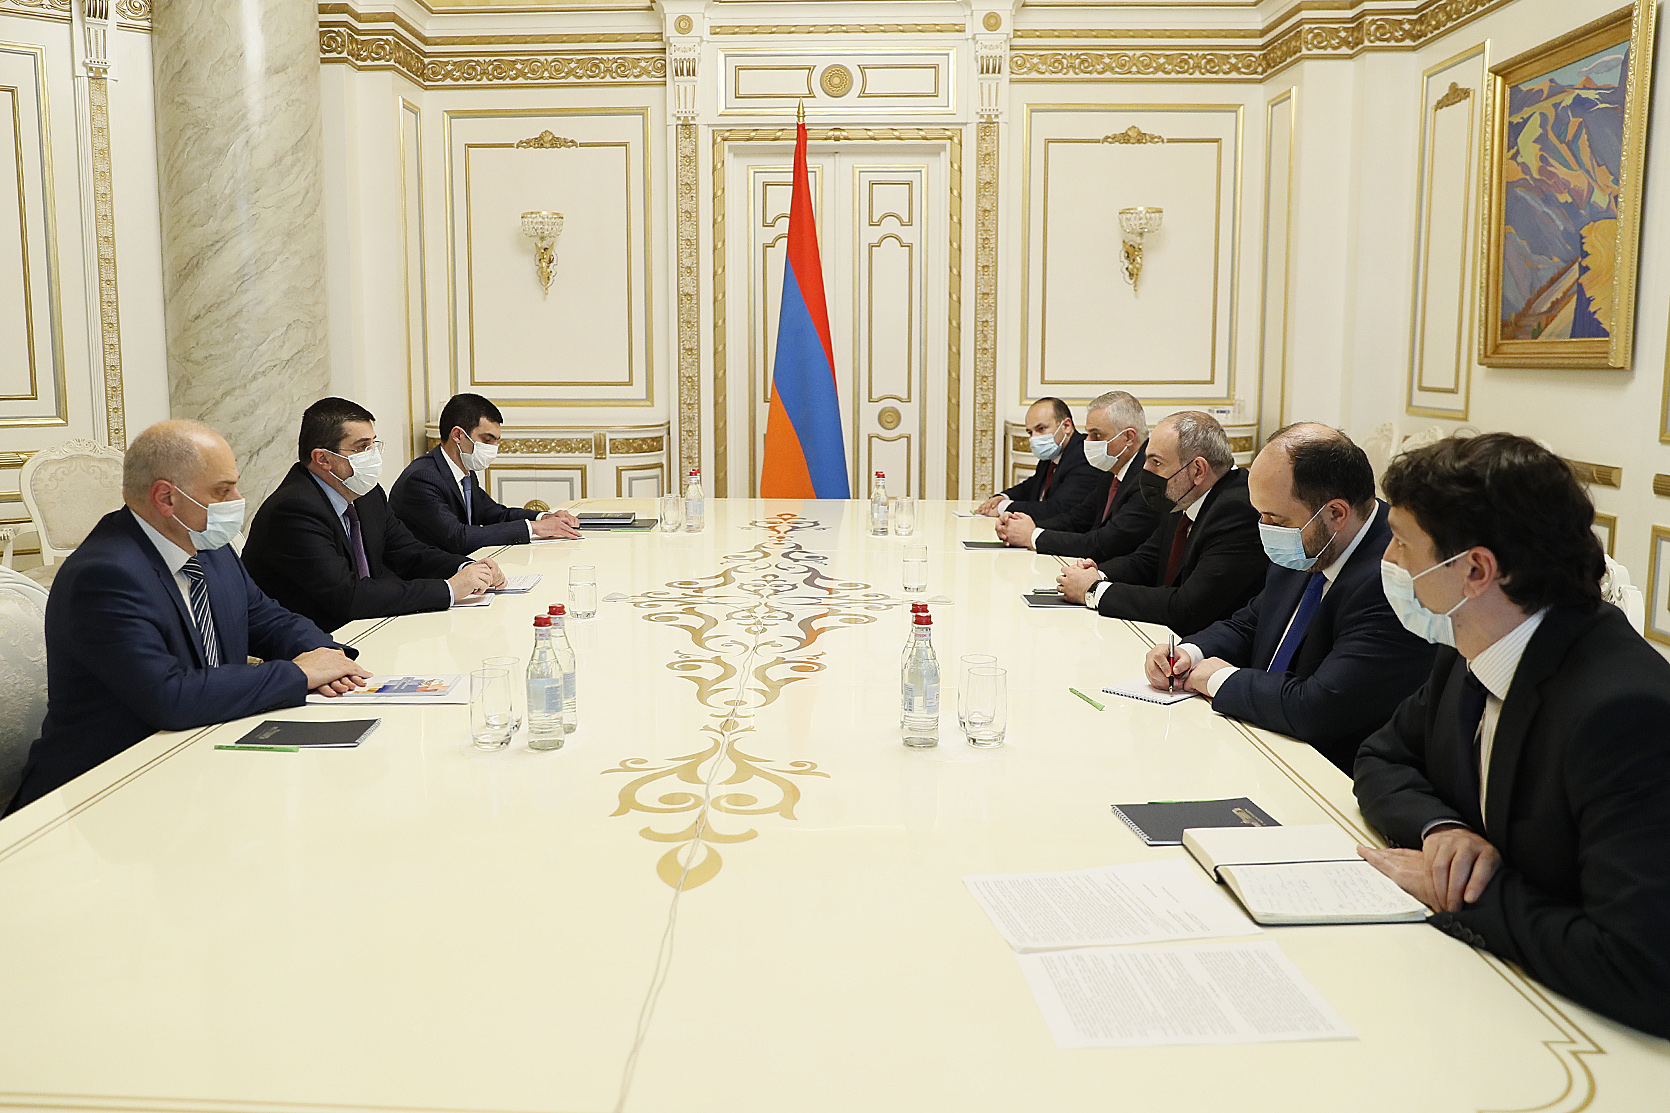 Հայաստանը շուրջ $300 մլն բյուջետային աջակցություն է տրամադրելու Արցախին 2022 թ. Փաշինյան